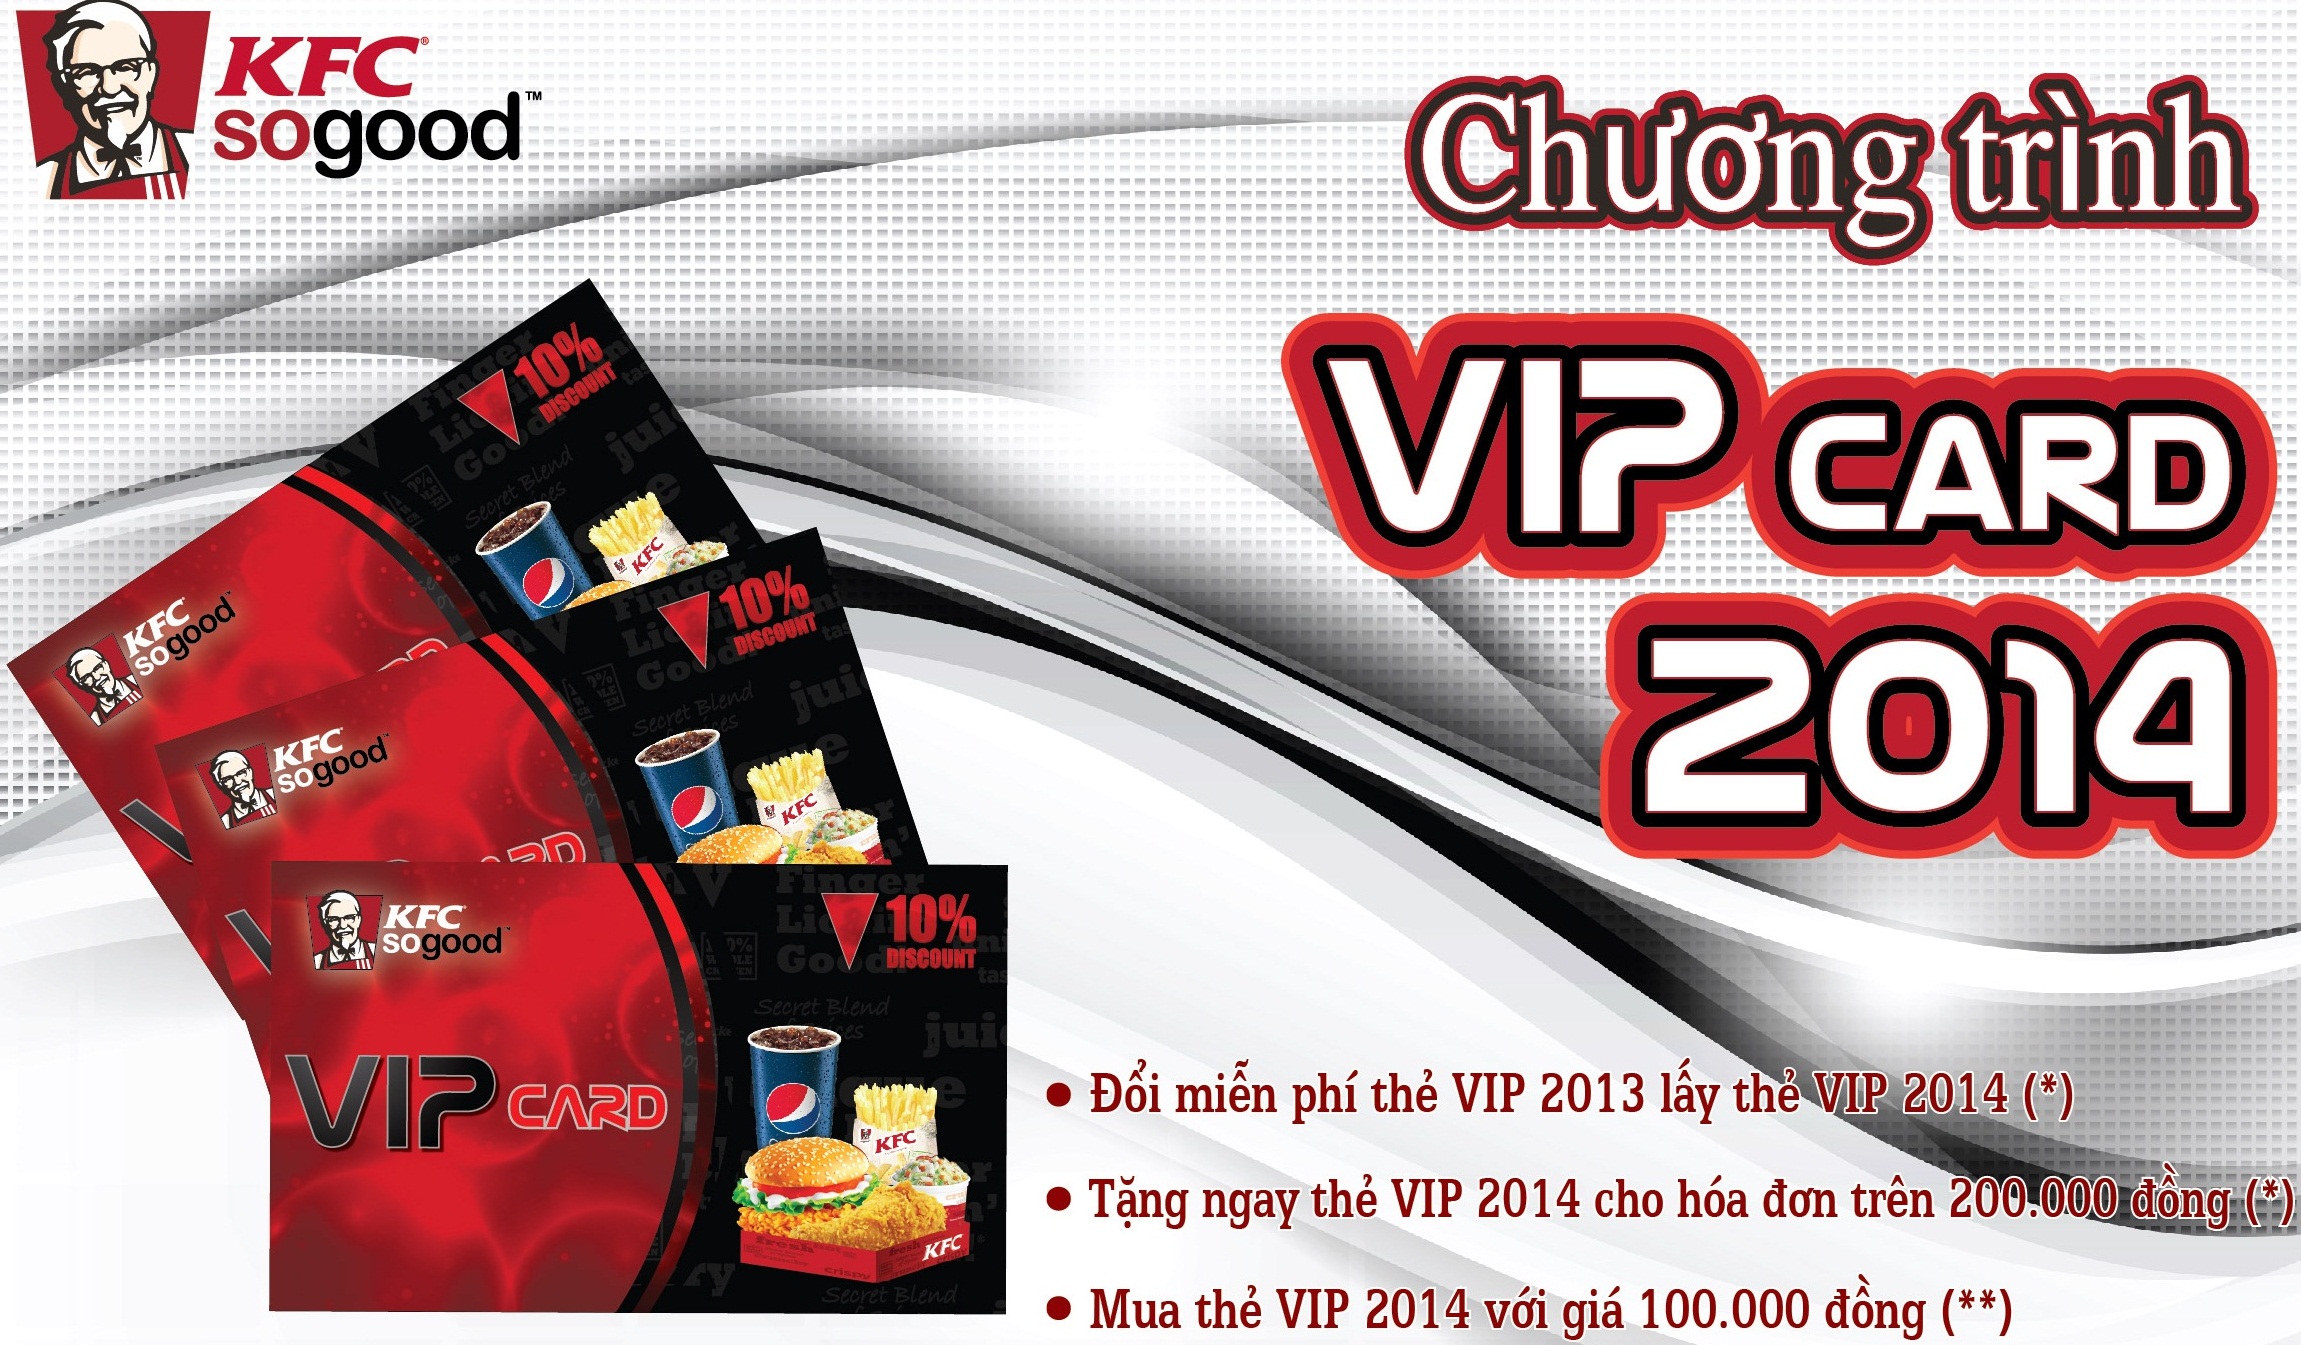 Khuyến mãi miễn phí đổi thẻ VIP KFC 2014